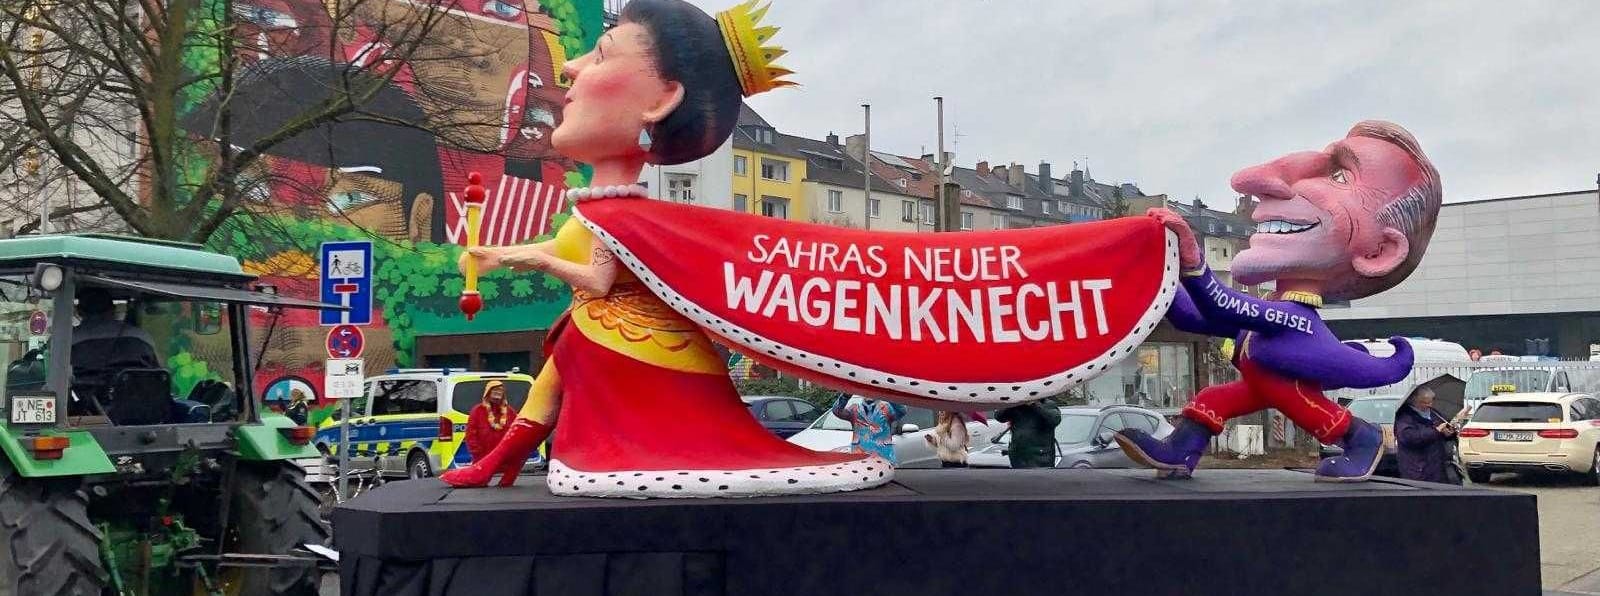 "Sahras neuer Wagenknecht" steht auf dem Umhang der Karikatur der Politikerin. Getragen von Düsseldorfs Ex-Oberbürgermeister Thomas Geisel, der die SPD verließ und bei Wagenknechts neuer Partei anheuerte.